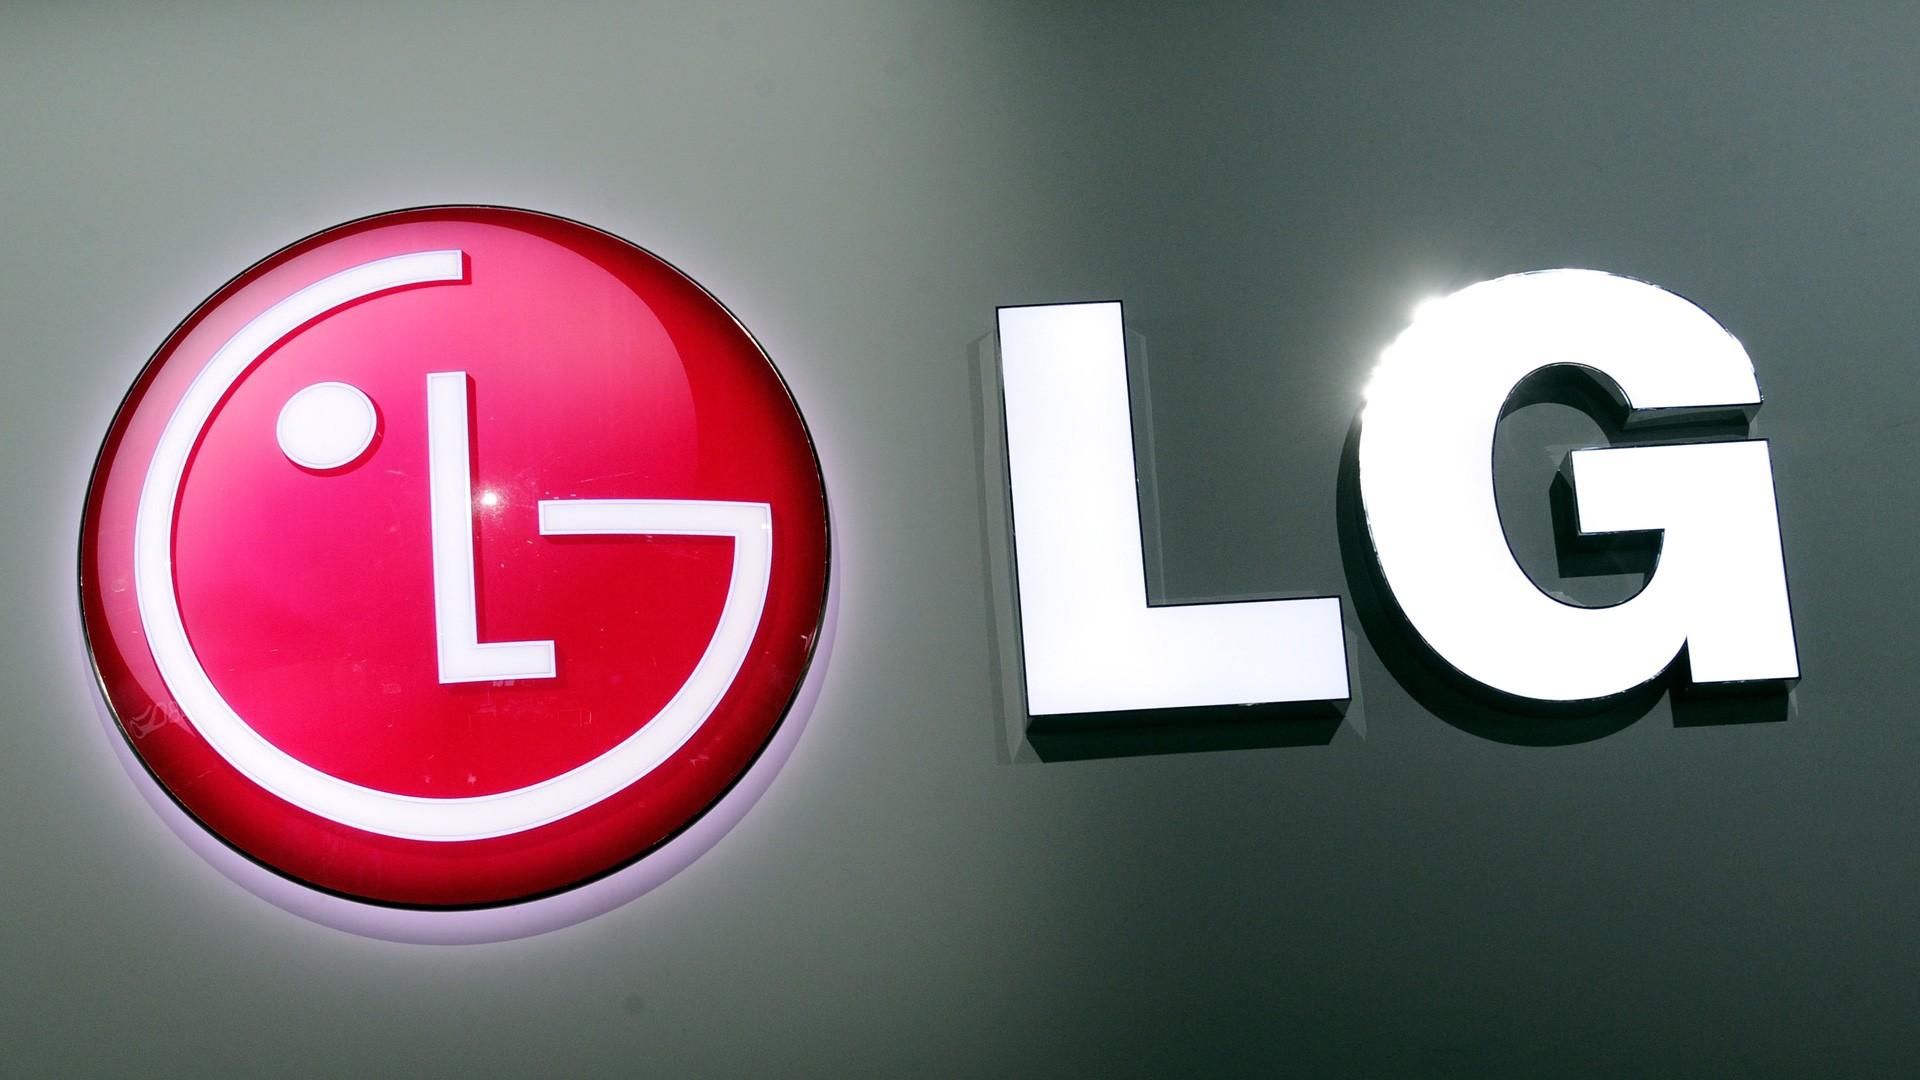 LG таки закрывает свое подразделение мобильных телефонов - Техно 24